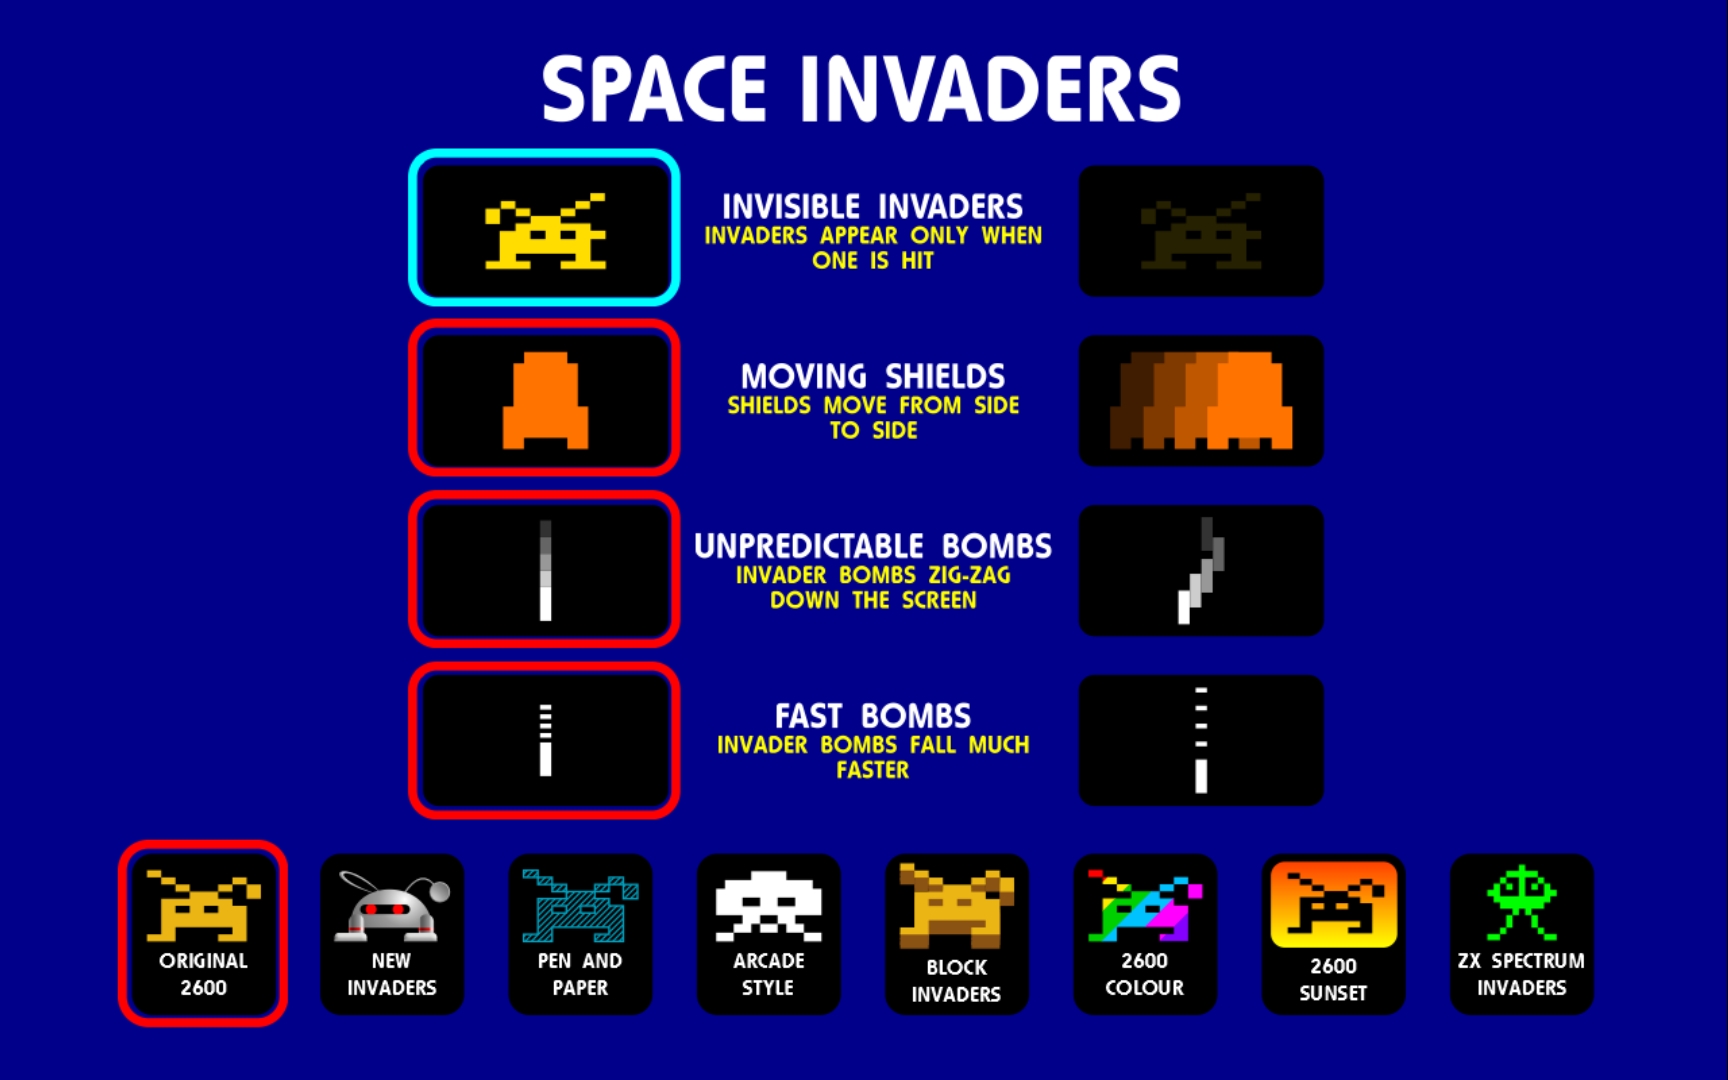 atari space invaders